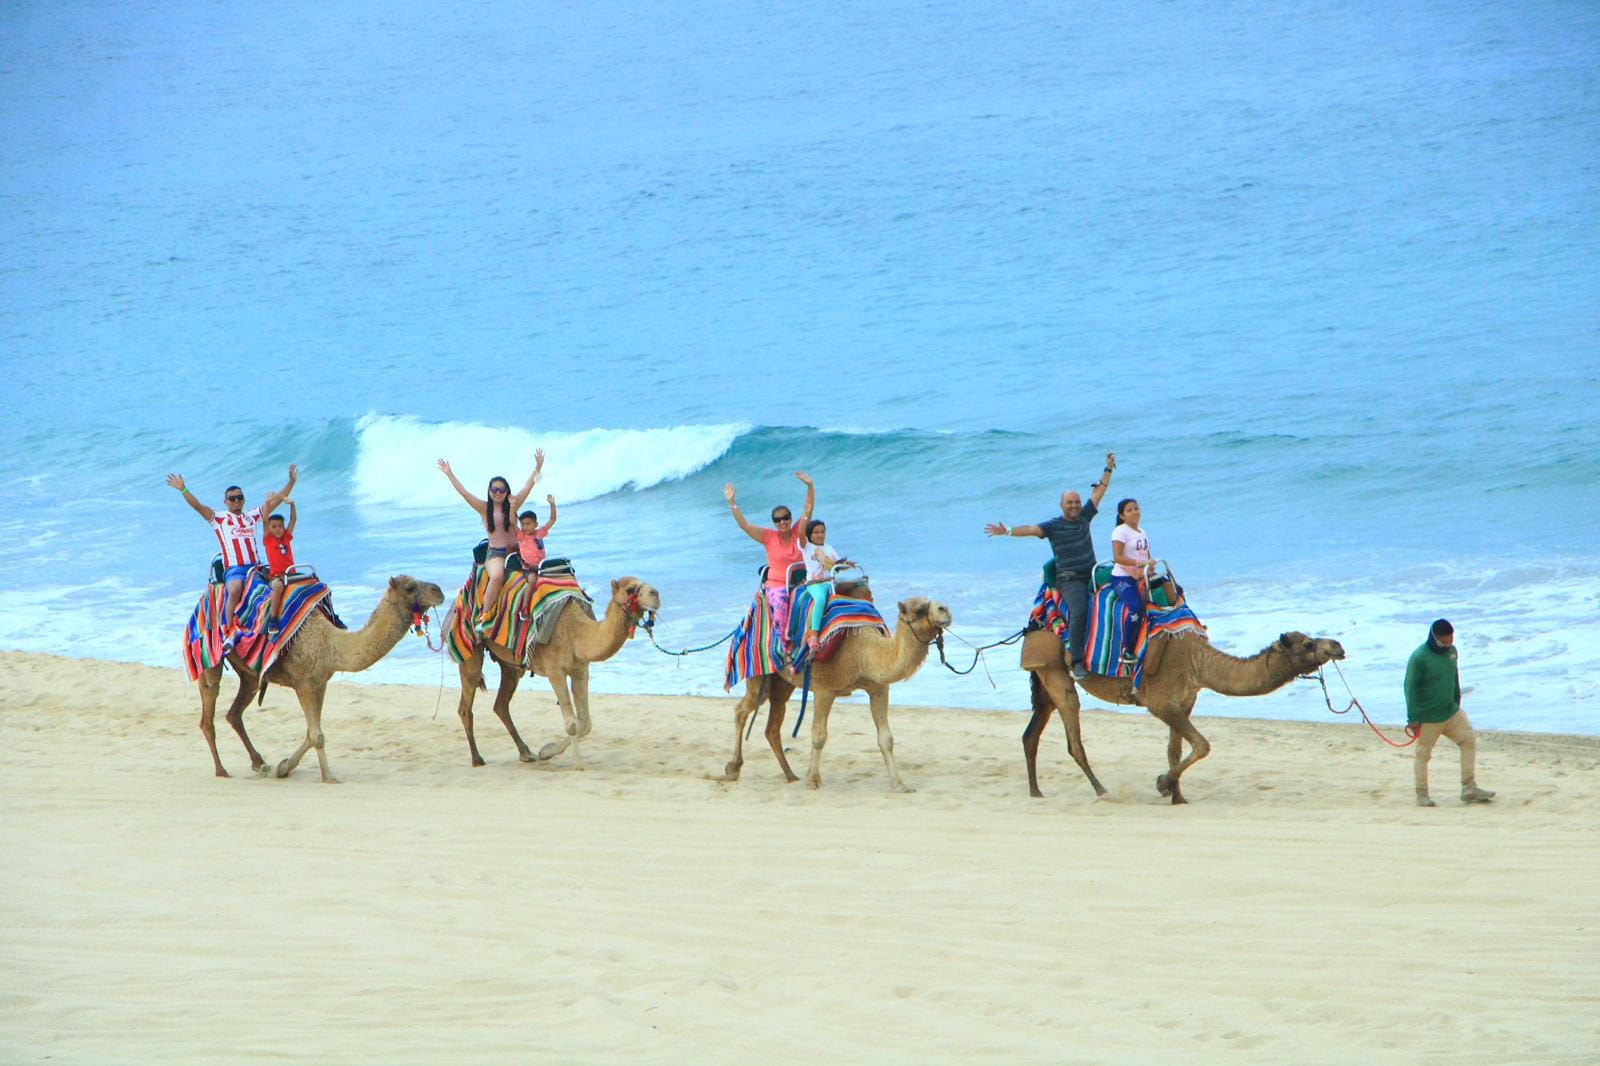 Desde Arabia a Baja California Sur: Montar a camello en Los Cabos es posible